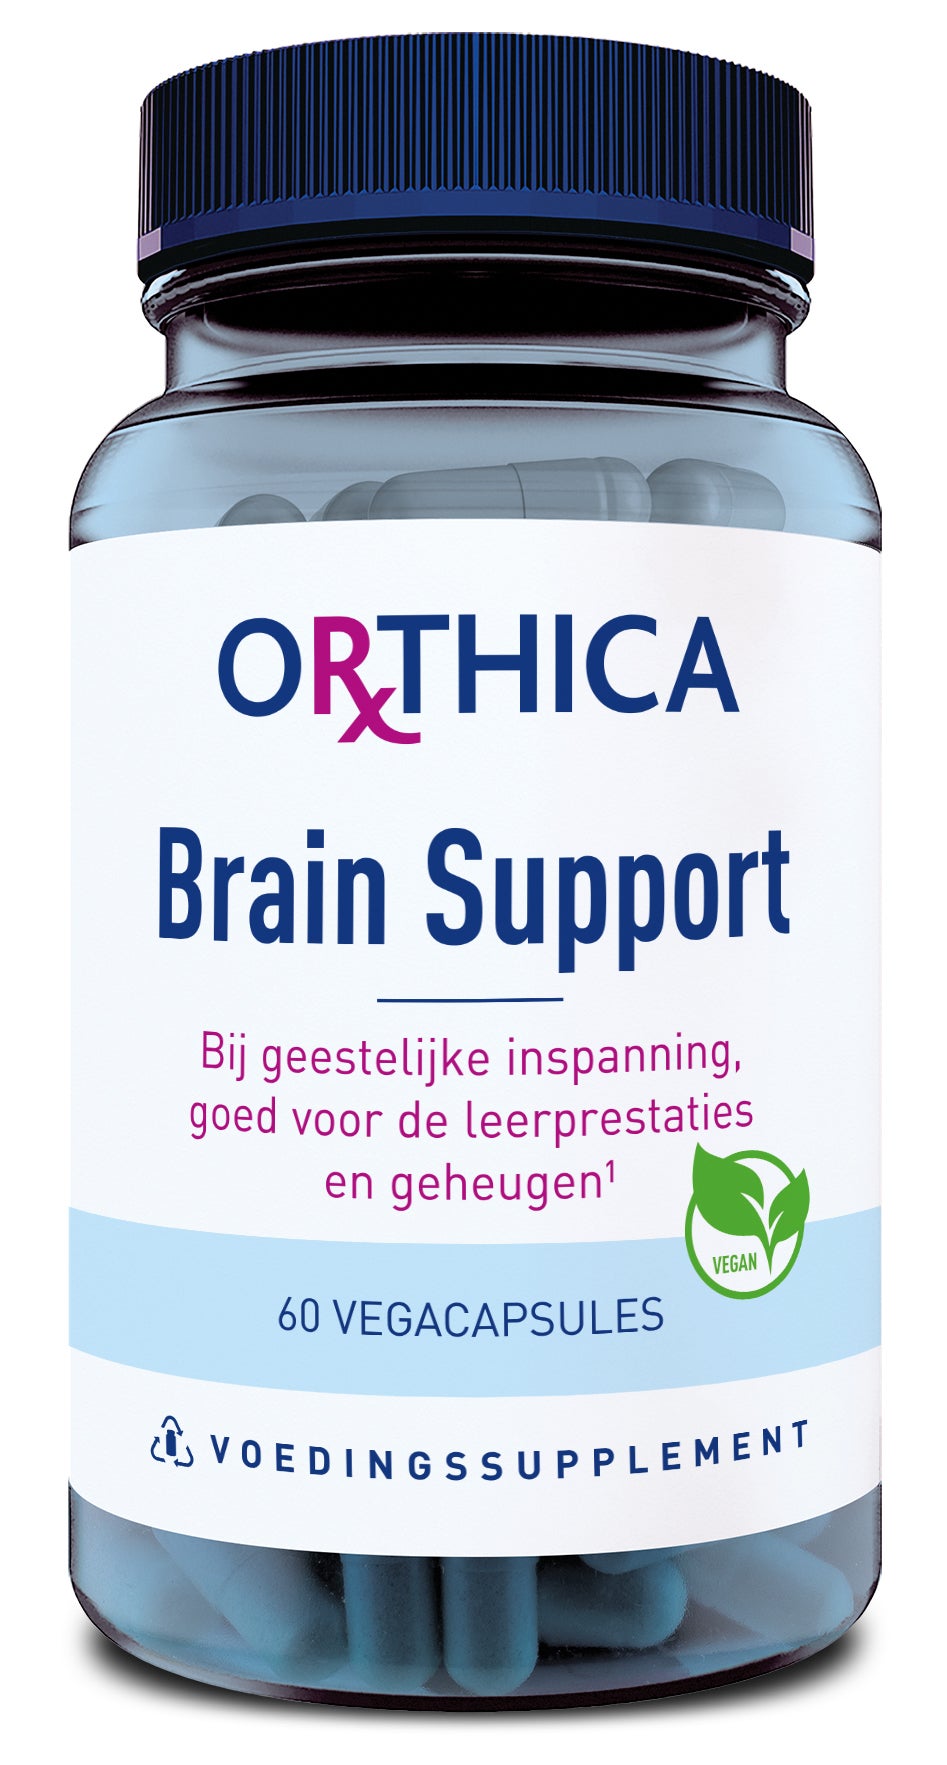 brain support